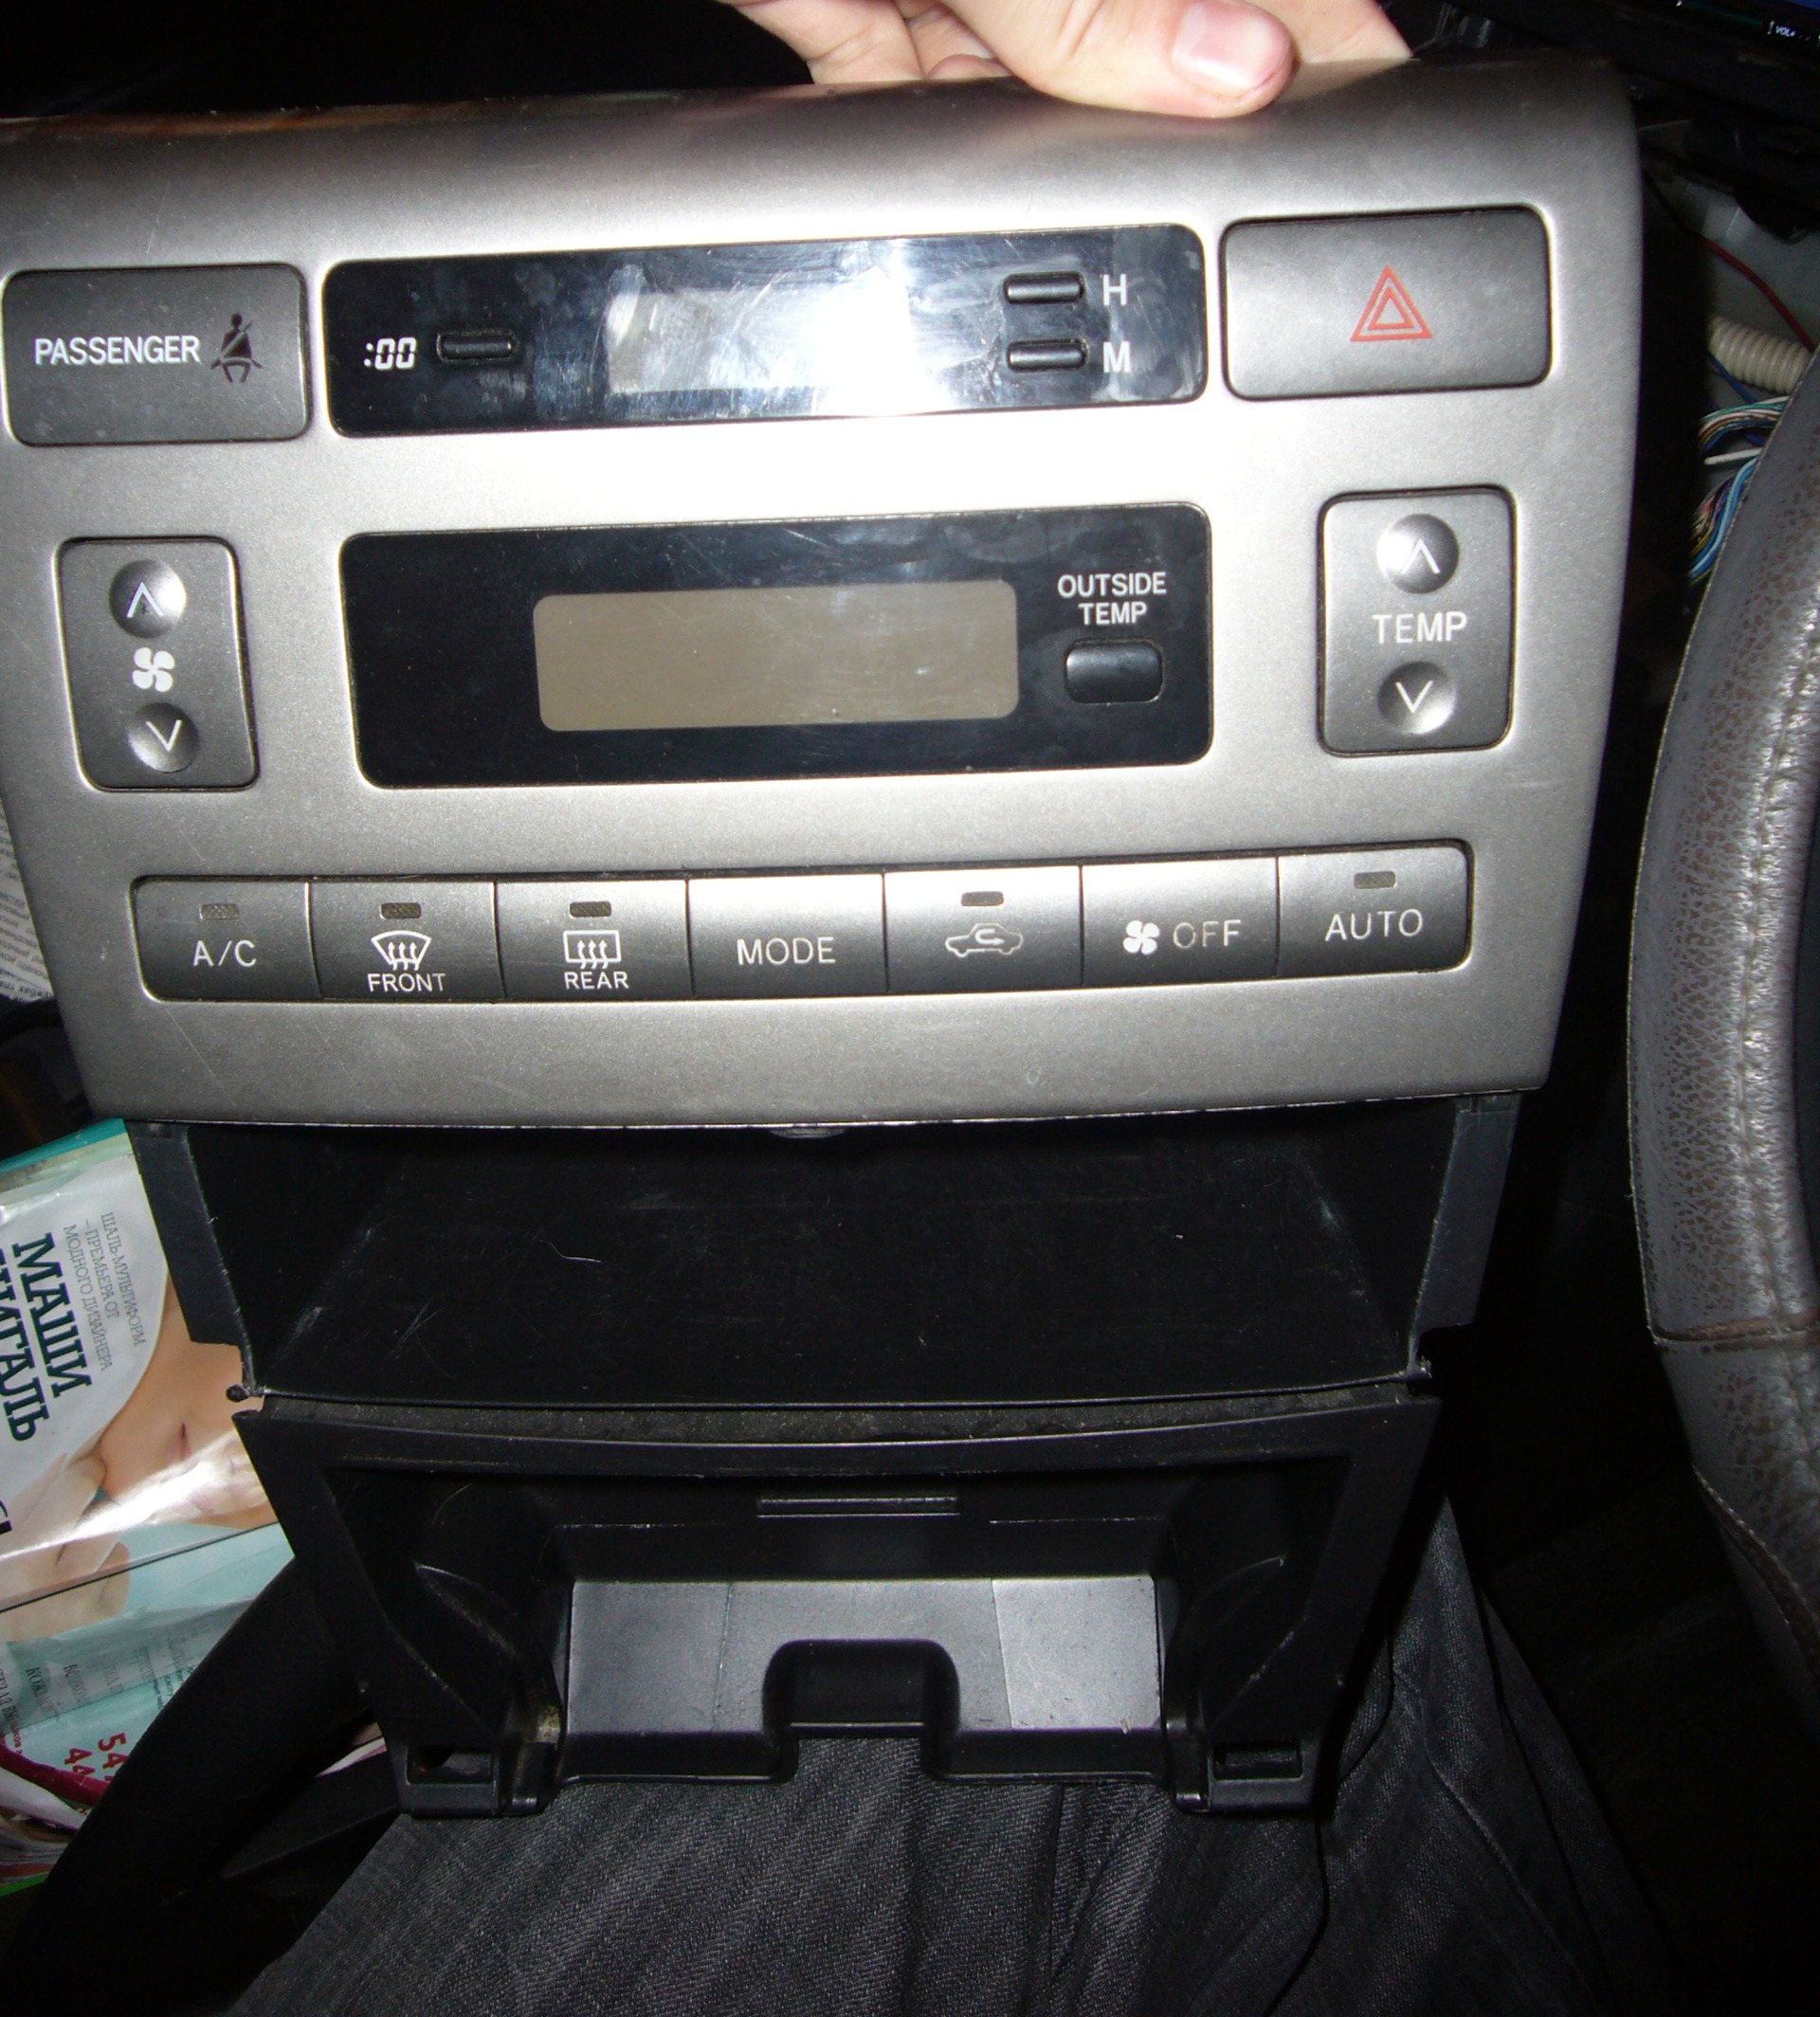     Toyota Corolla Fielder 15 2005 